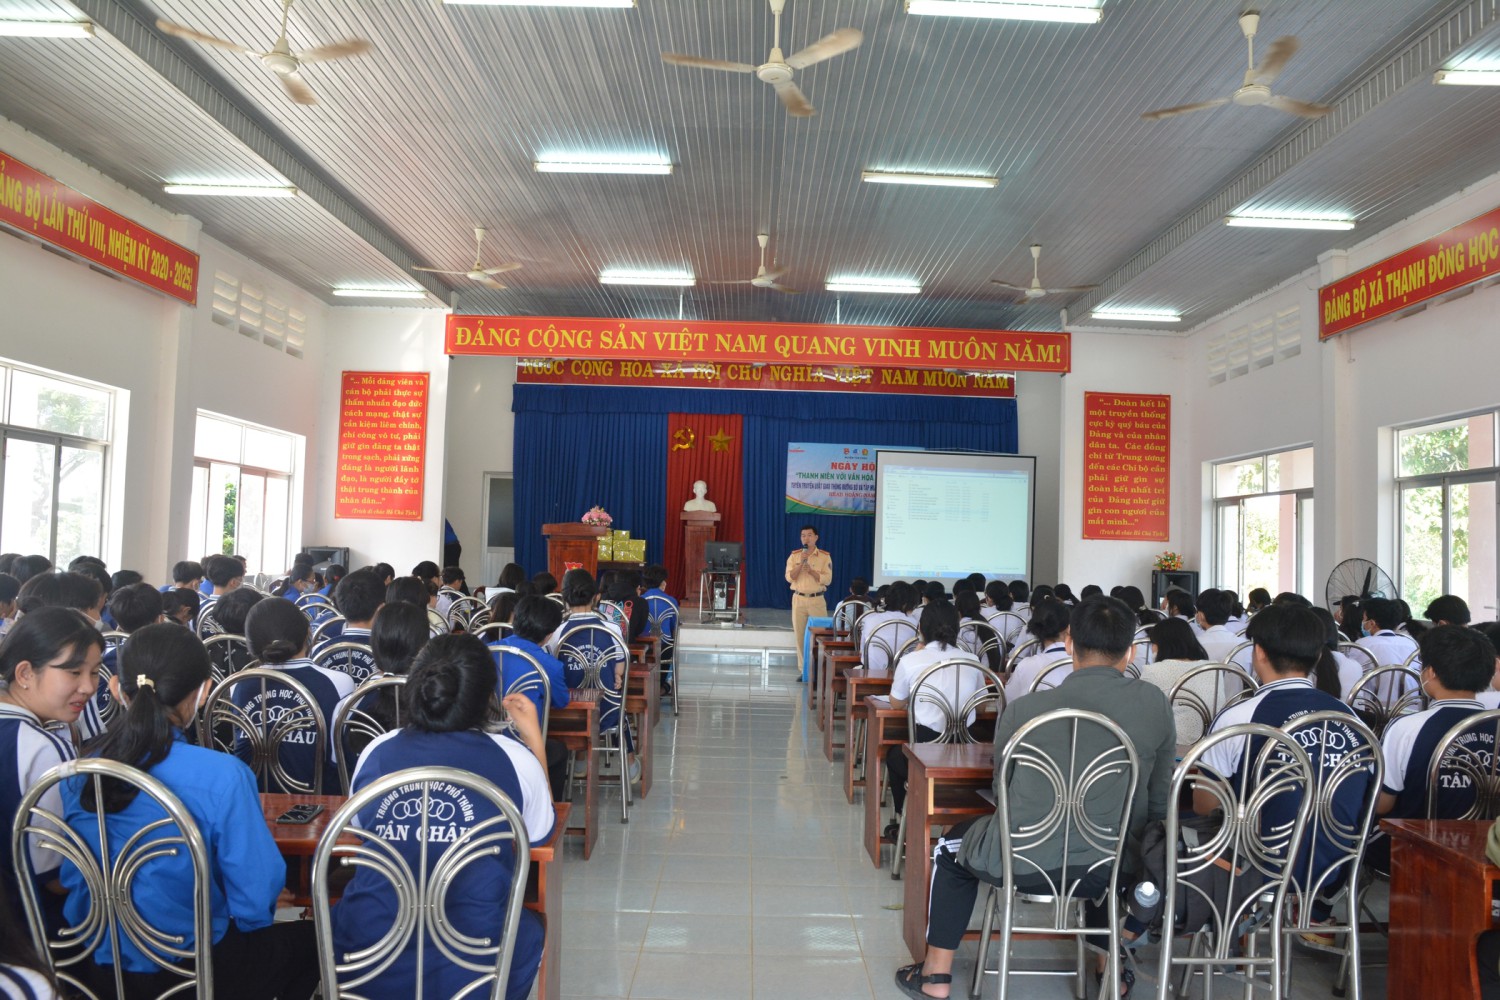 Huyện đoàn Tân Châu tổ chức ngày hội  thanh niên với văn hóa giao thông